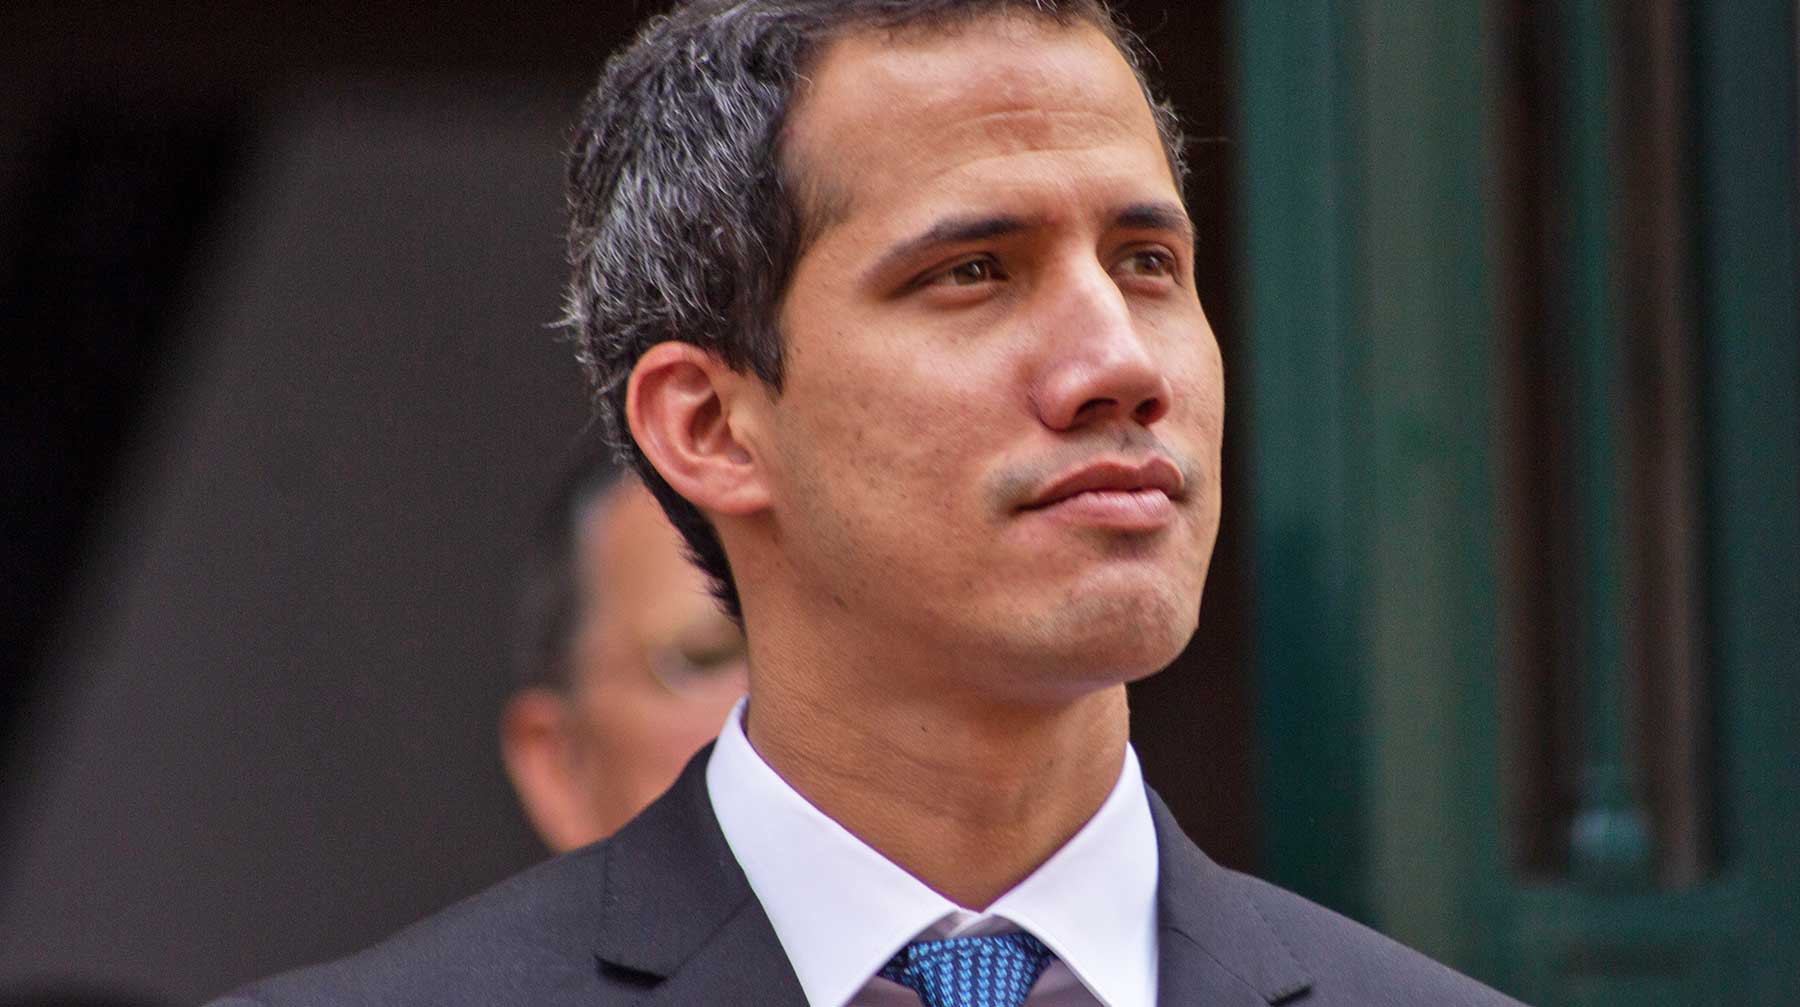 Dailystorm - Венесуэльские власти предложили Гуайдо вместе выработать решение выхода из кризиса